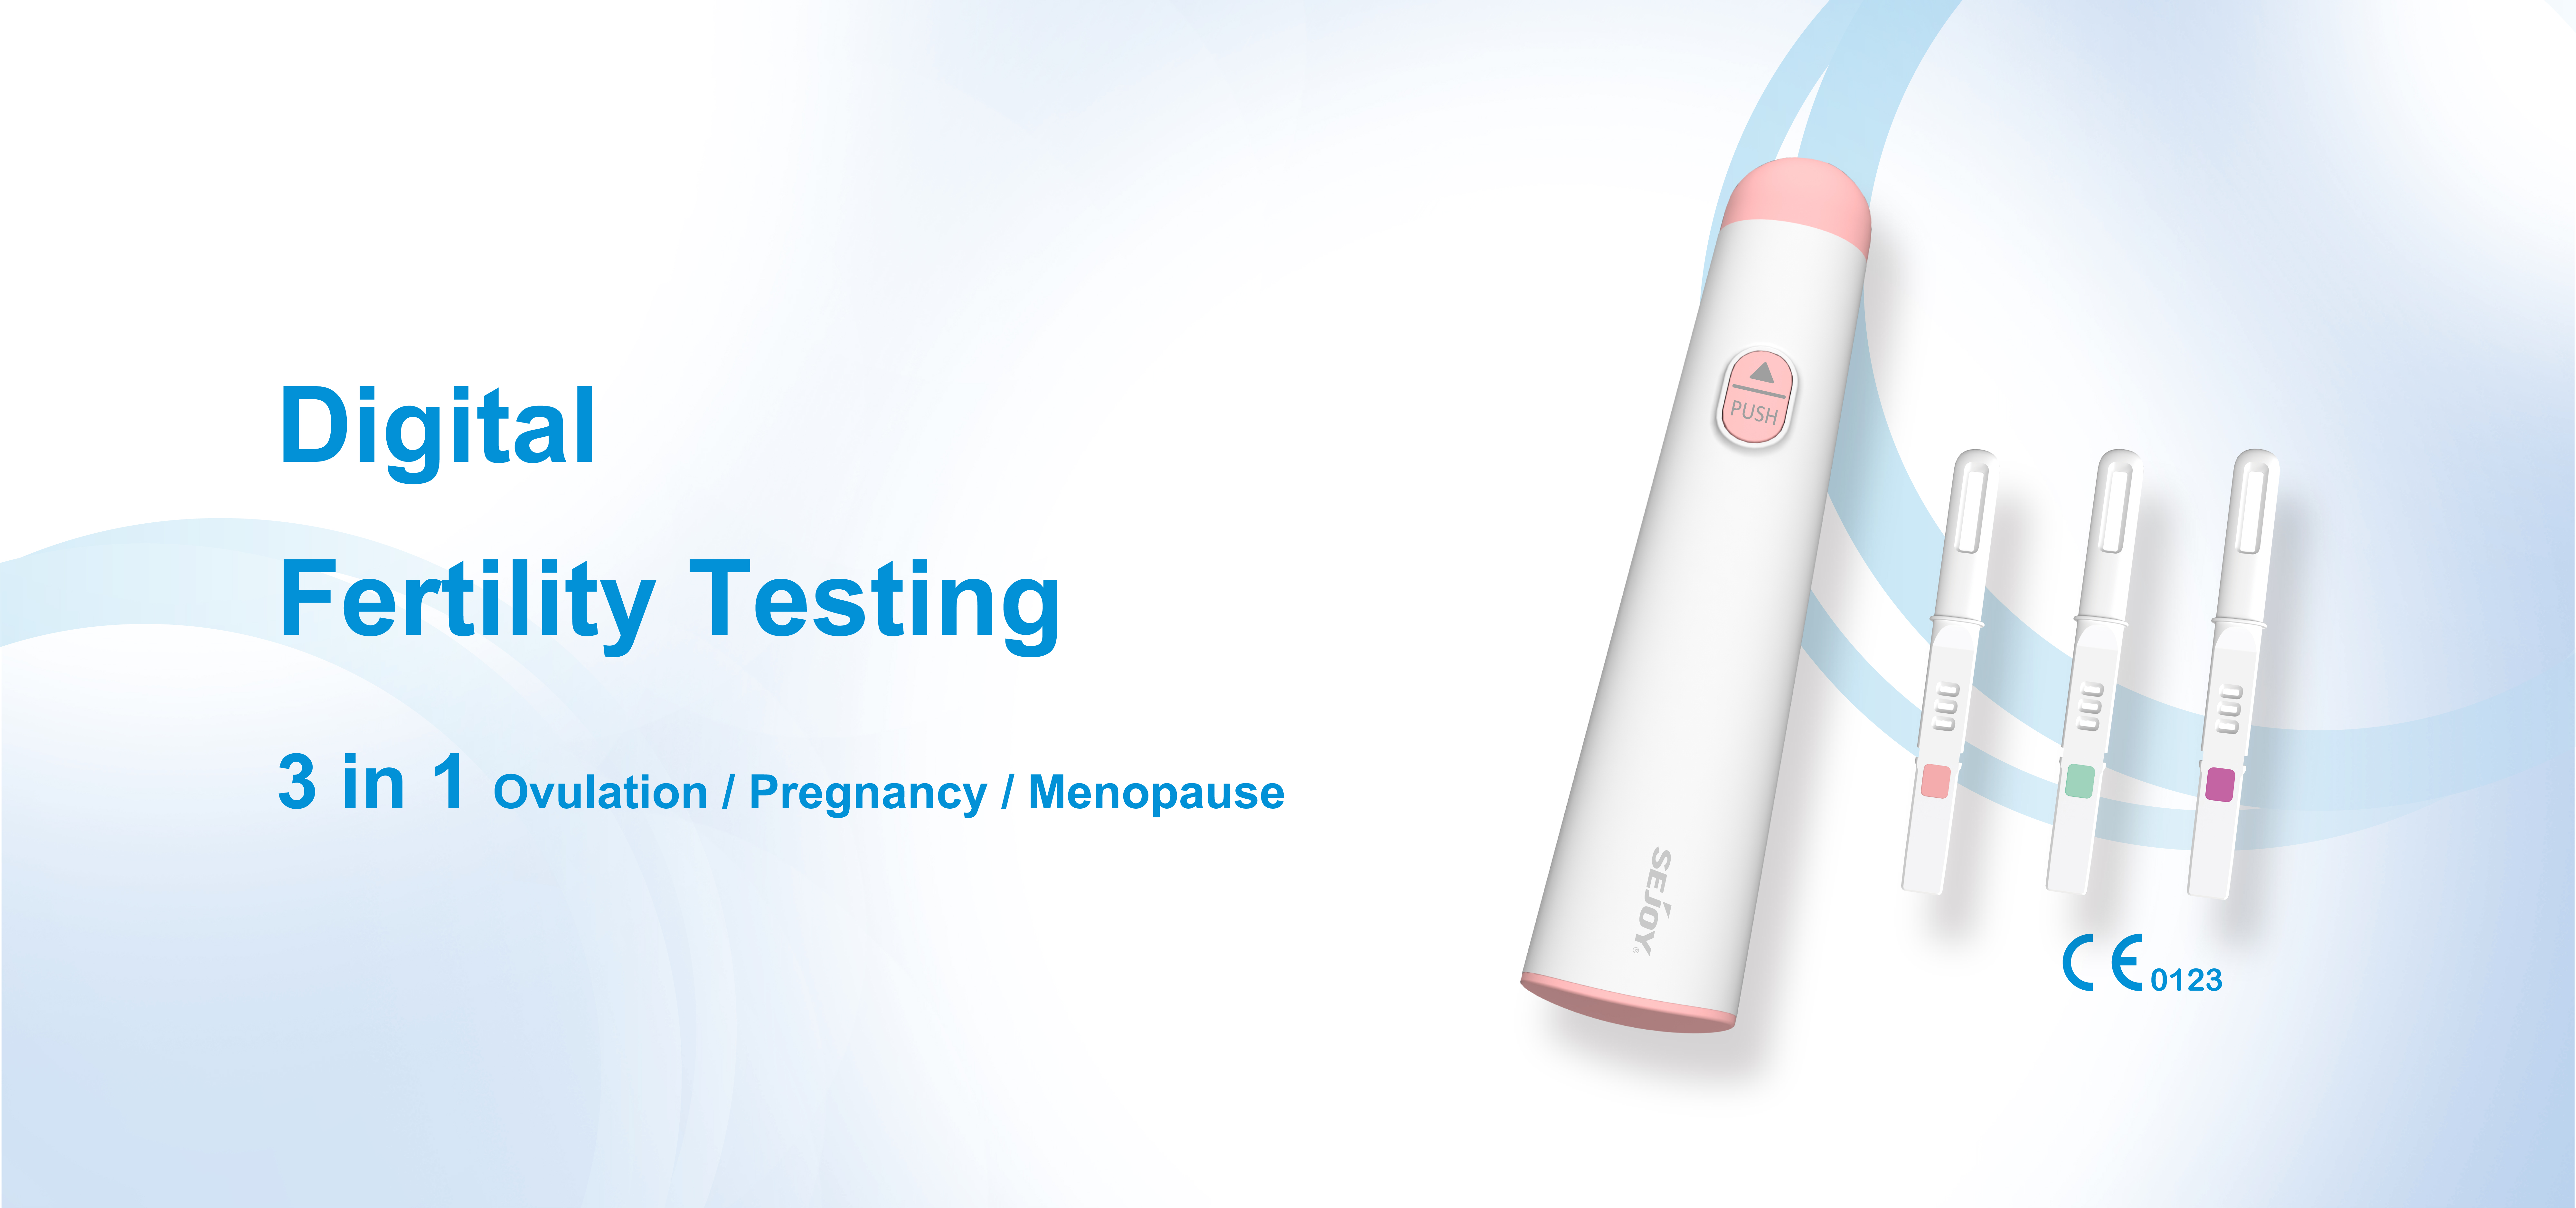 Digital Fertility Testing System